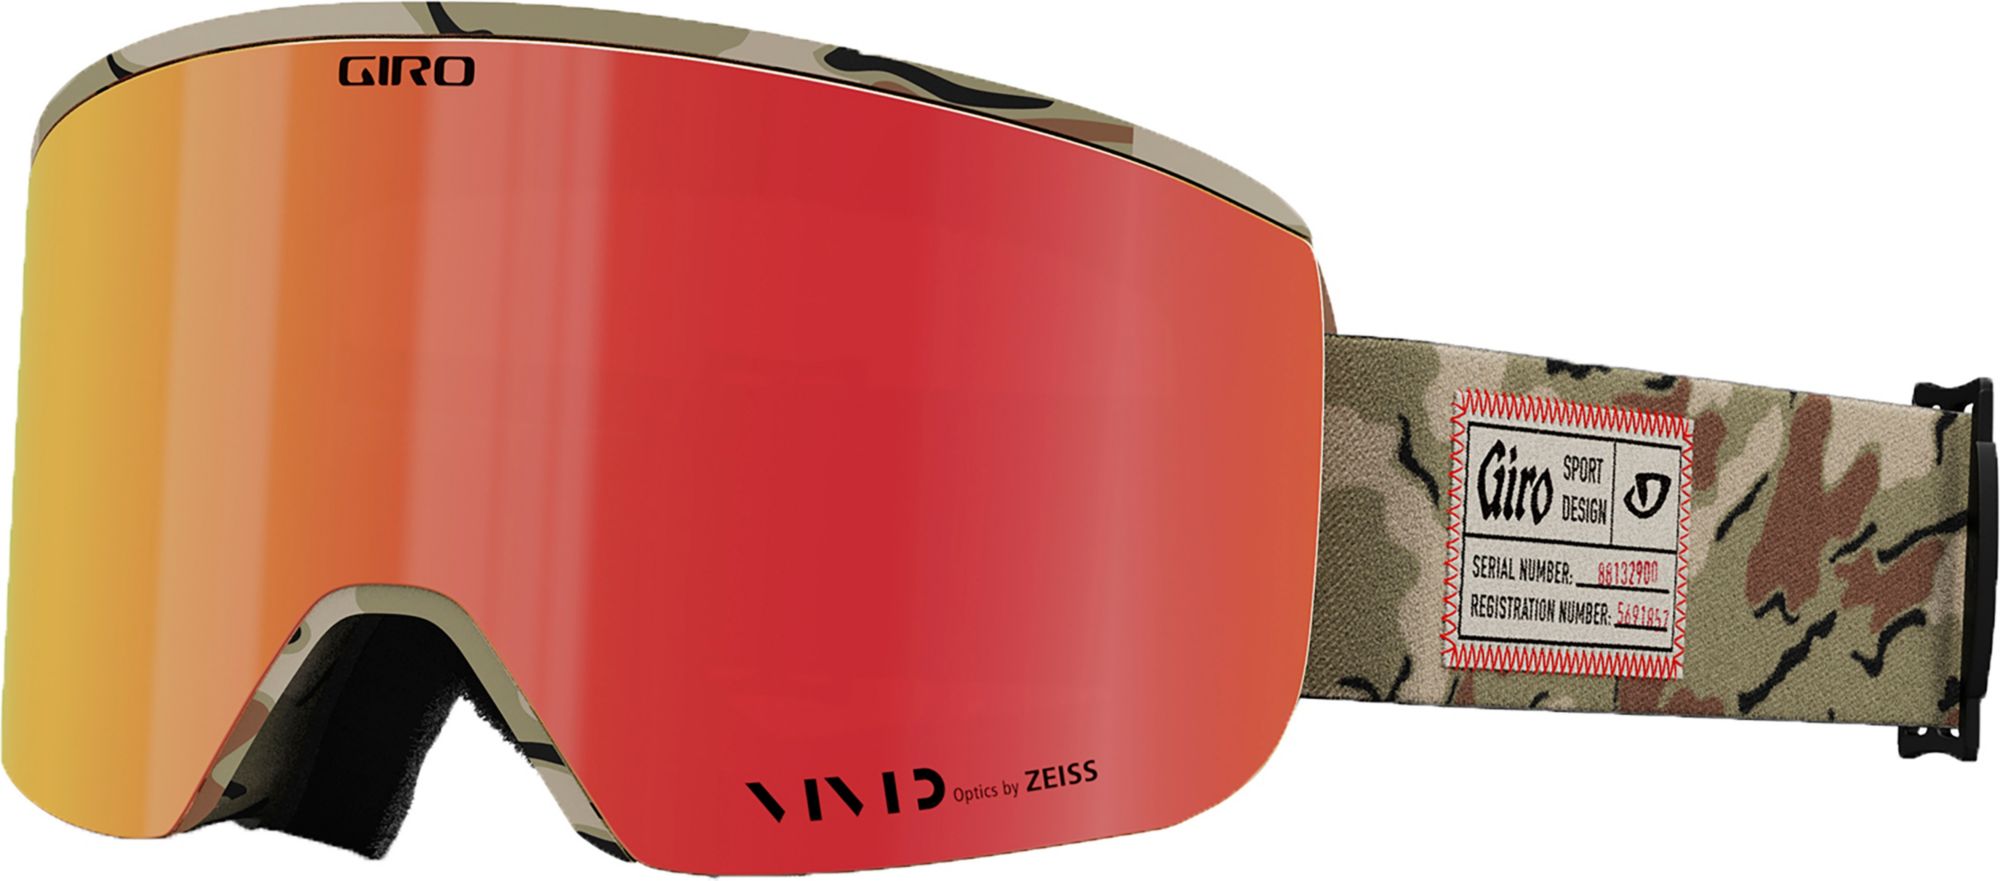 Photos - Ski Goggles Giro Axis Unisex Snow Goggle with Bonus Infrared Lens, Green Surplus 23GIR 